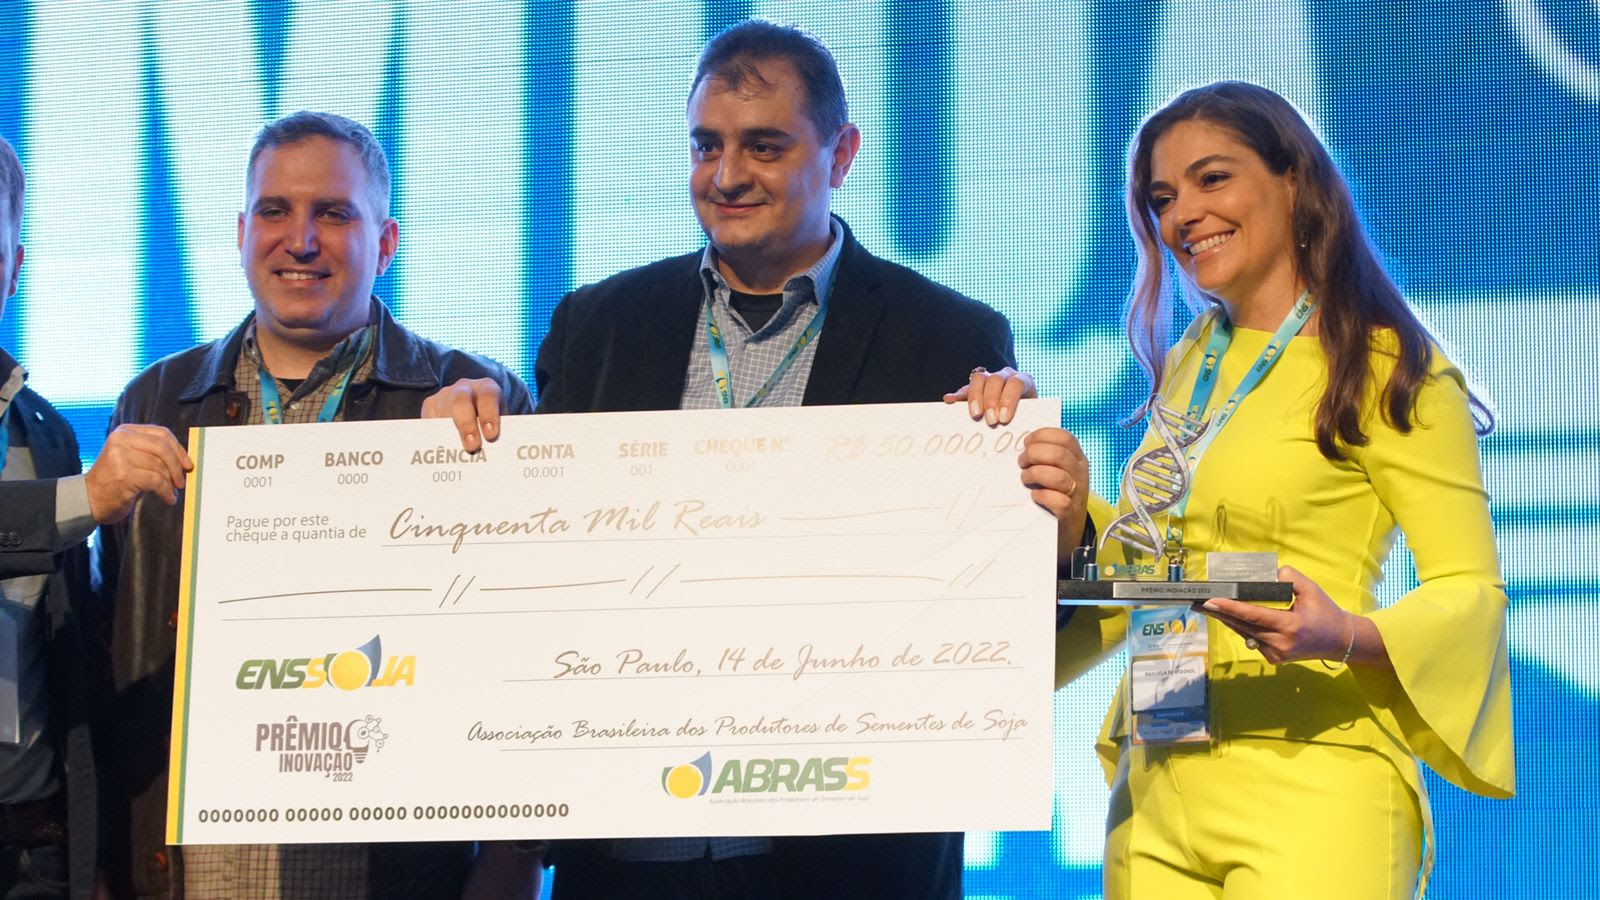 Prêmio Inovação ABRASS coroa investimento em pesquisa e soluções